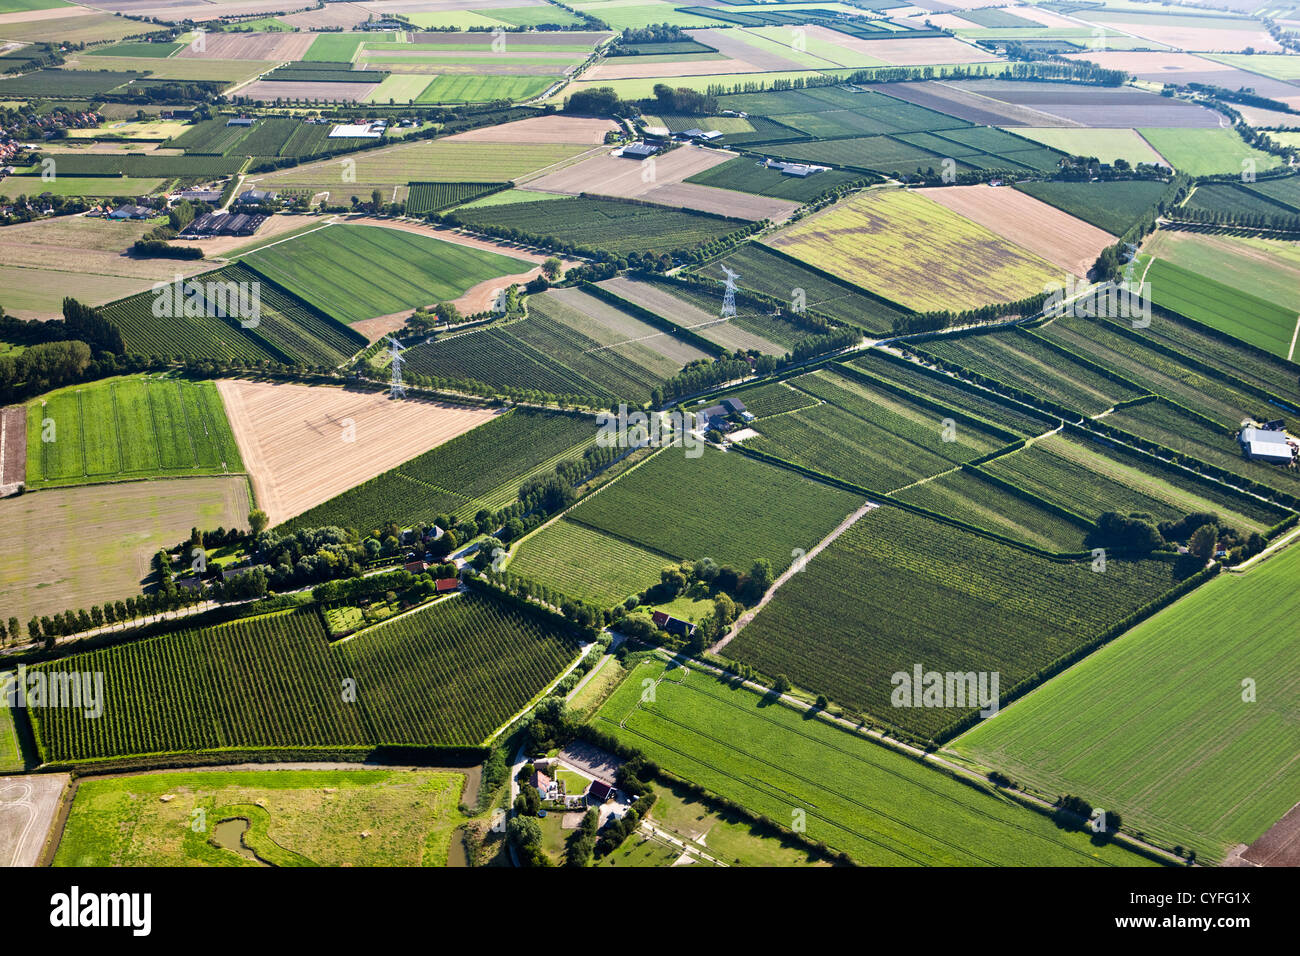 Les Pays-Bas, Kloosterzande, Campagne. De fermes et de terres agricoles. Vue aérienne. Banque D'Images